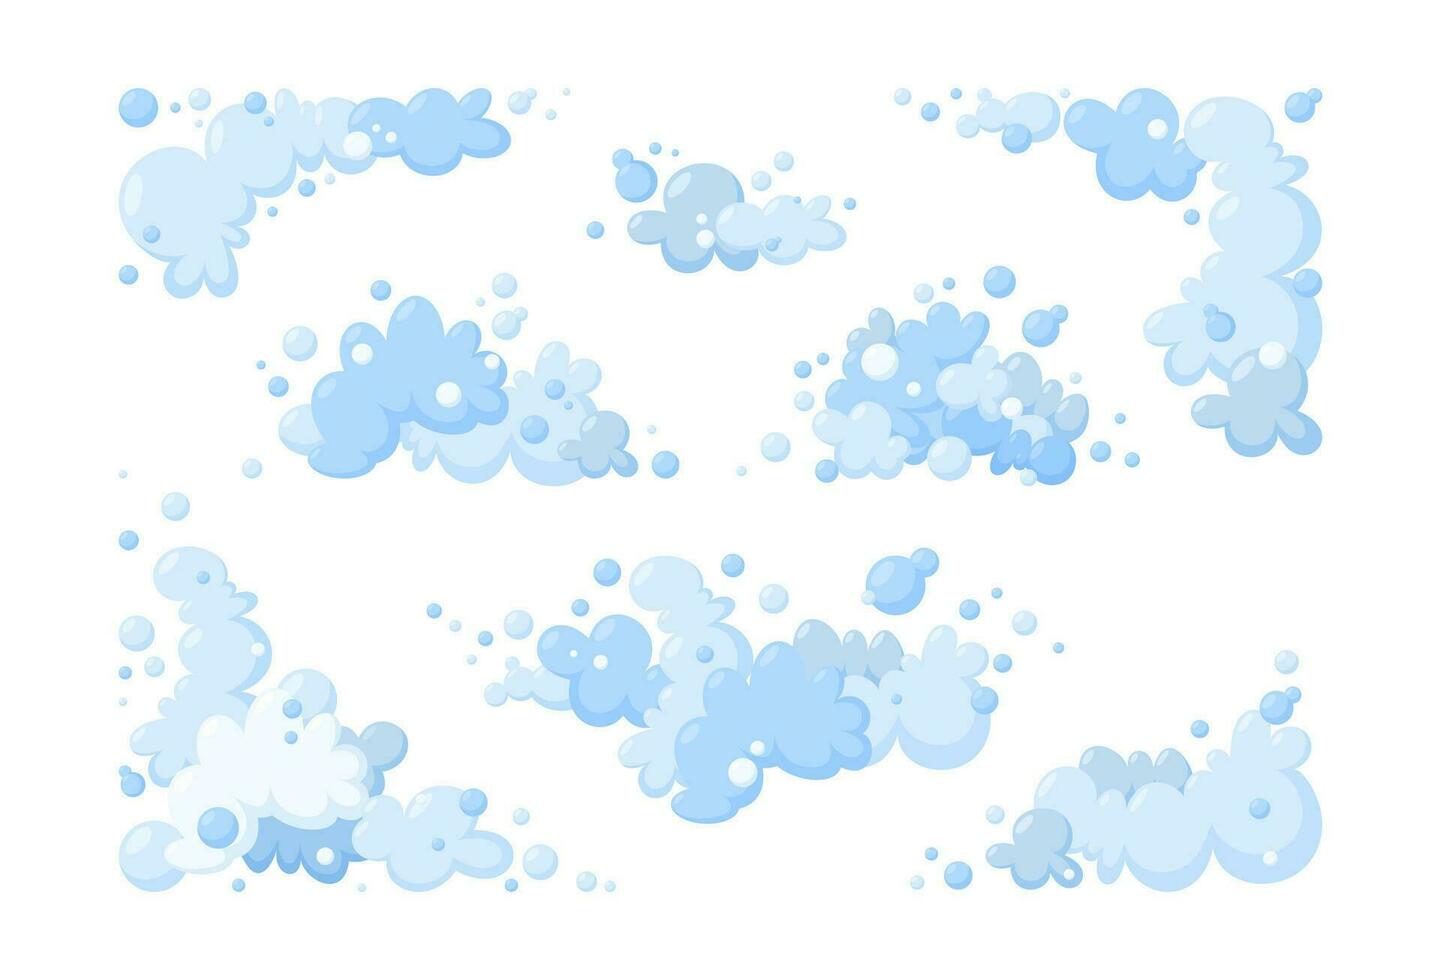 Schaum gemacht von Seife oder Wolken. groß einstellen von Blau Schaum und Luftblasen von anders Formen. wolkig Rahmen und Ecken. Vektor Illustration